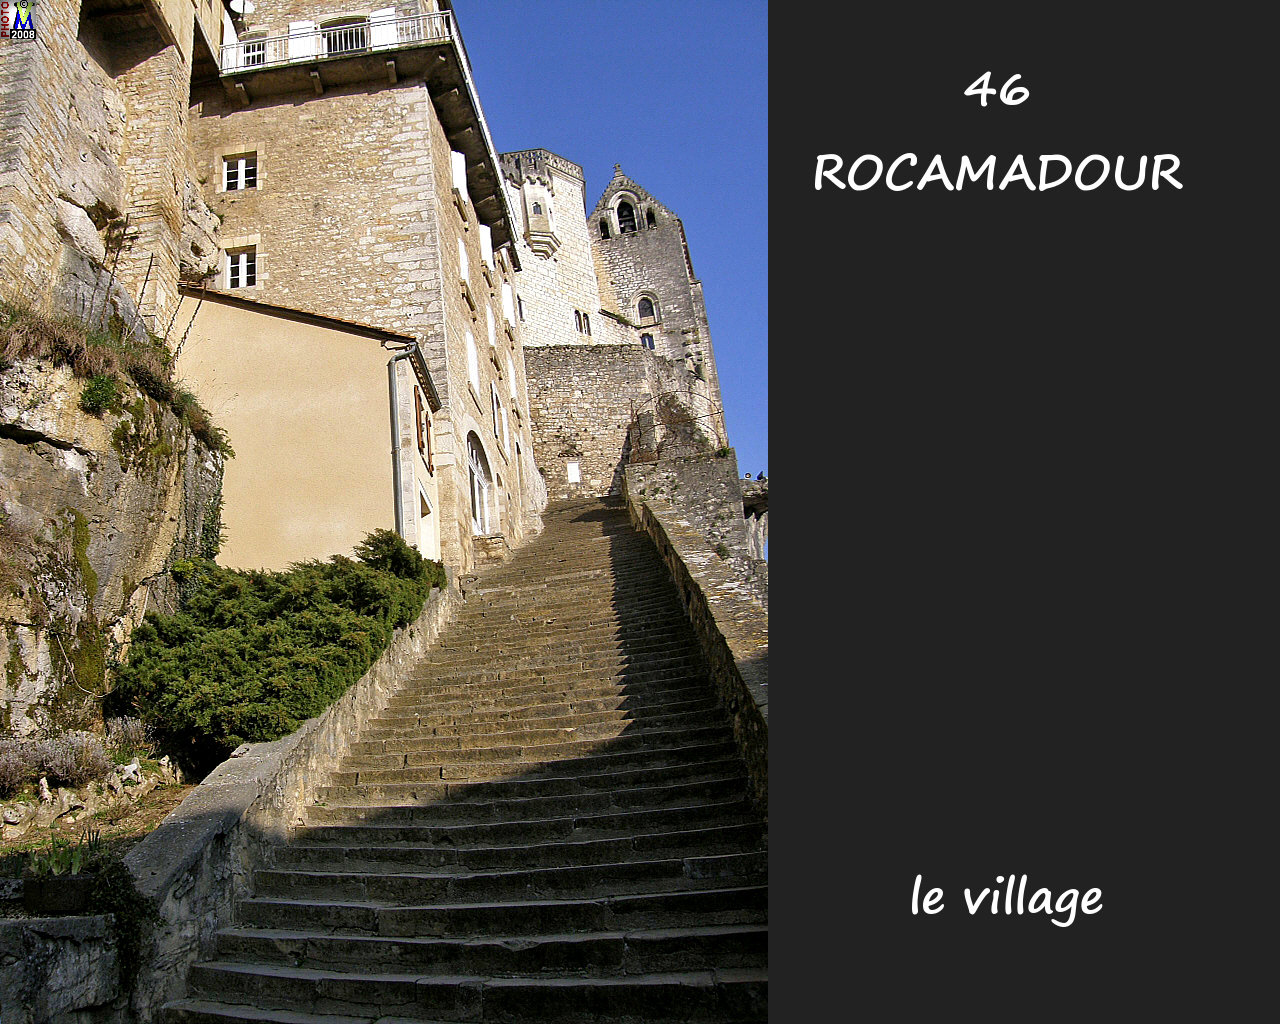 46ROCAMADOUR_village_140.jpg